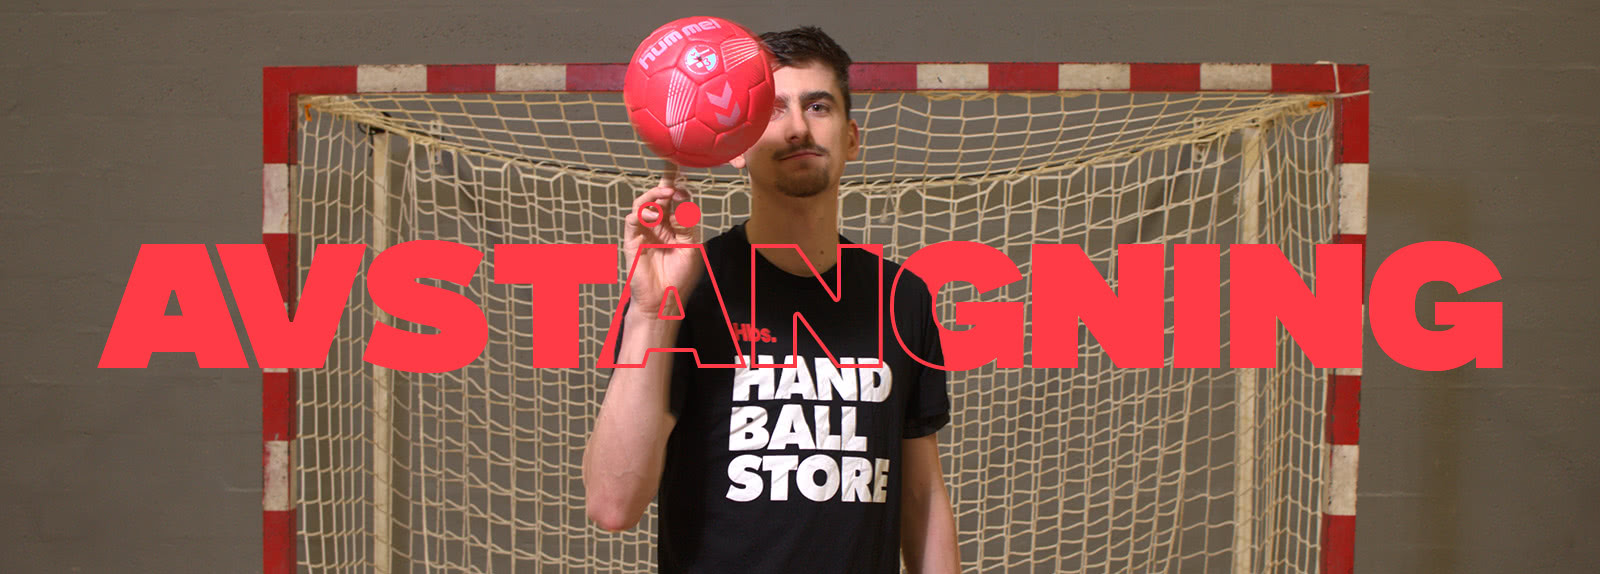 Handball avstangning